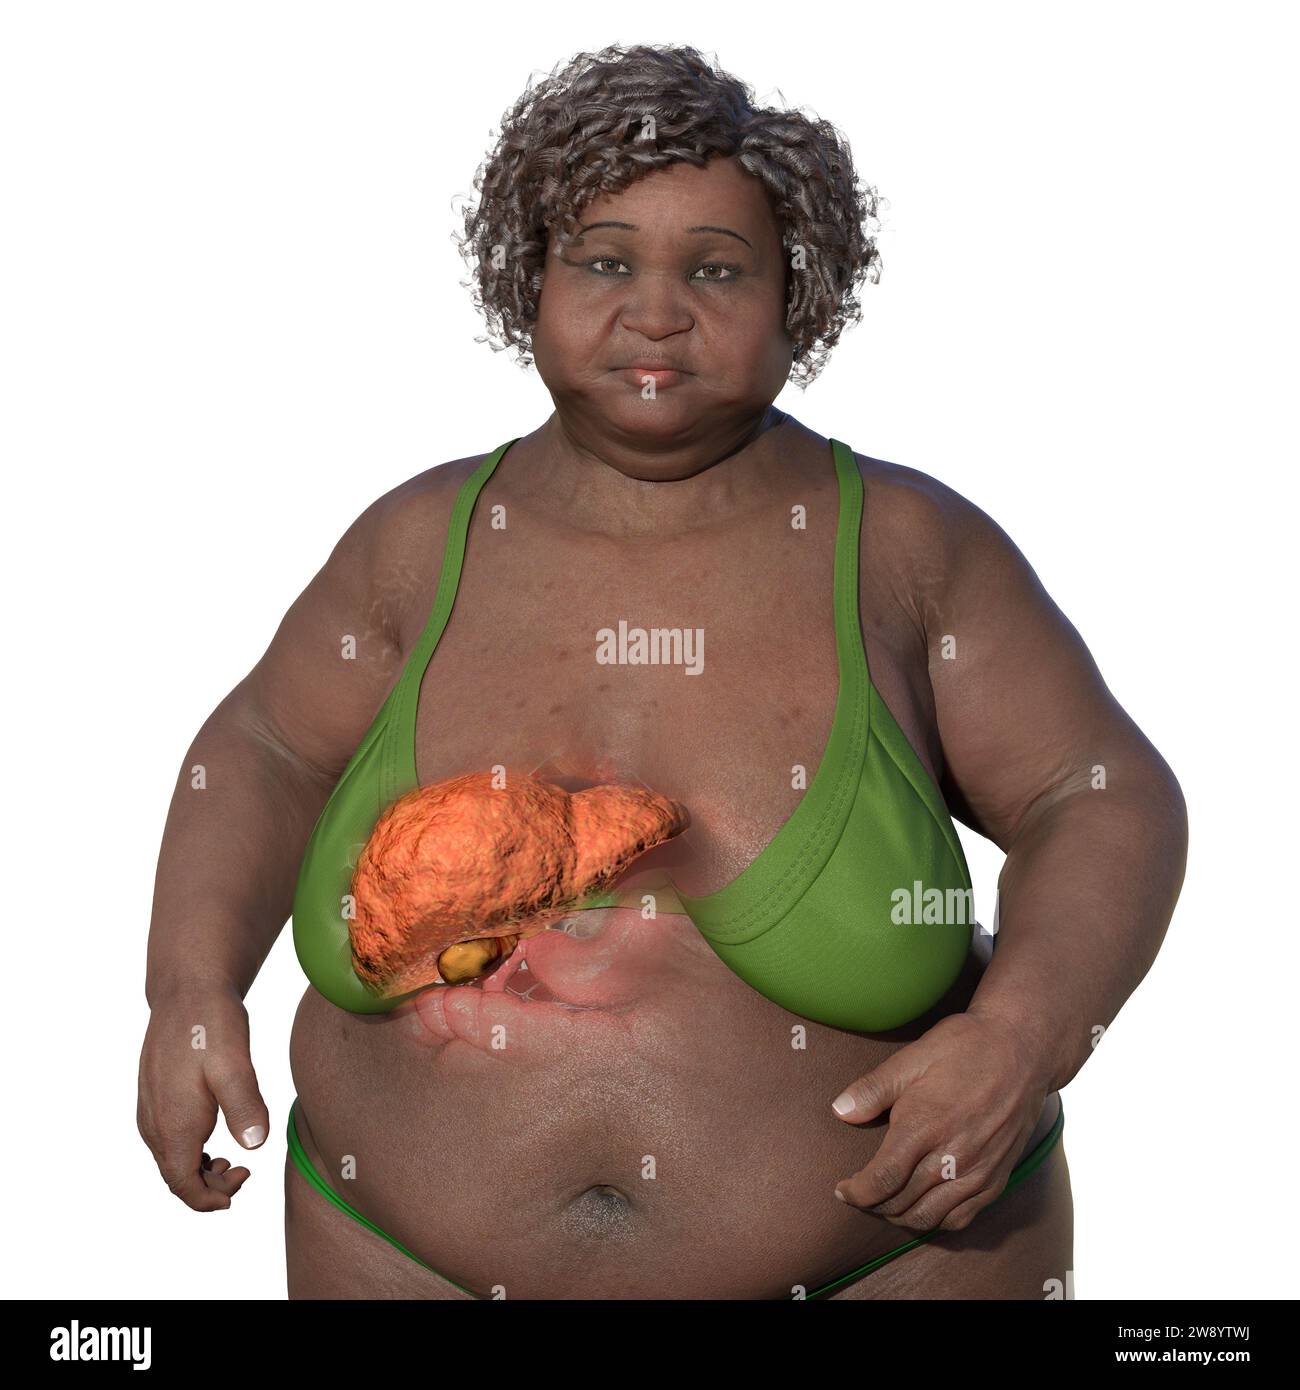 Illustrazione con una donna in sovrappeso con pelle trasparente, che mostra il fegato ed evidenzia la presenza di steatosi epatica. Foto Stock